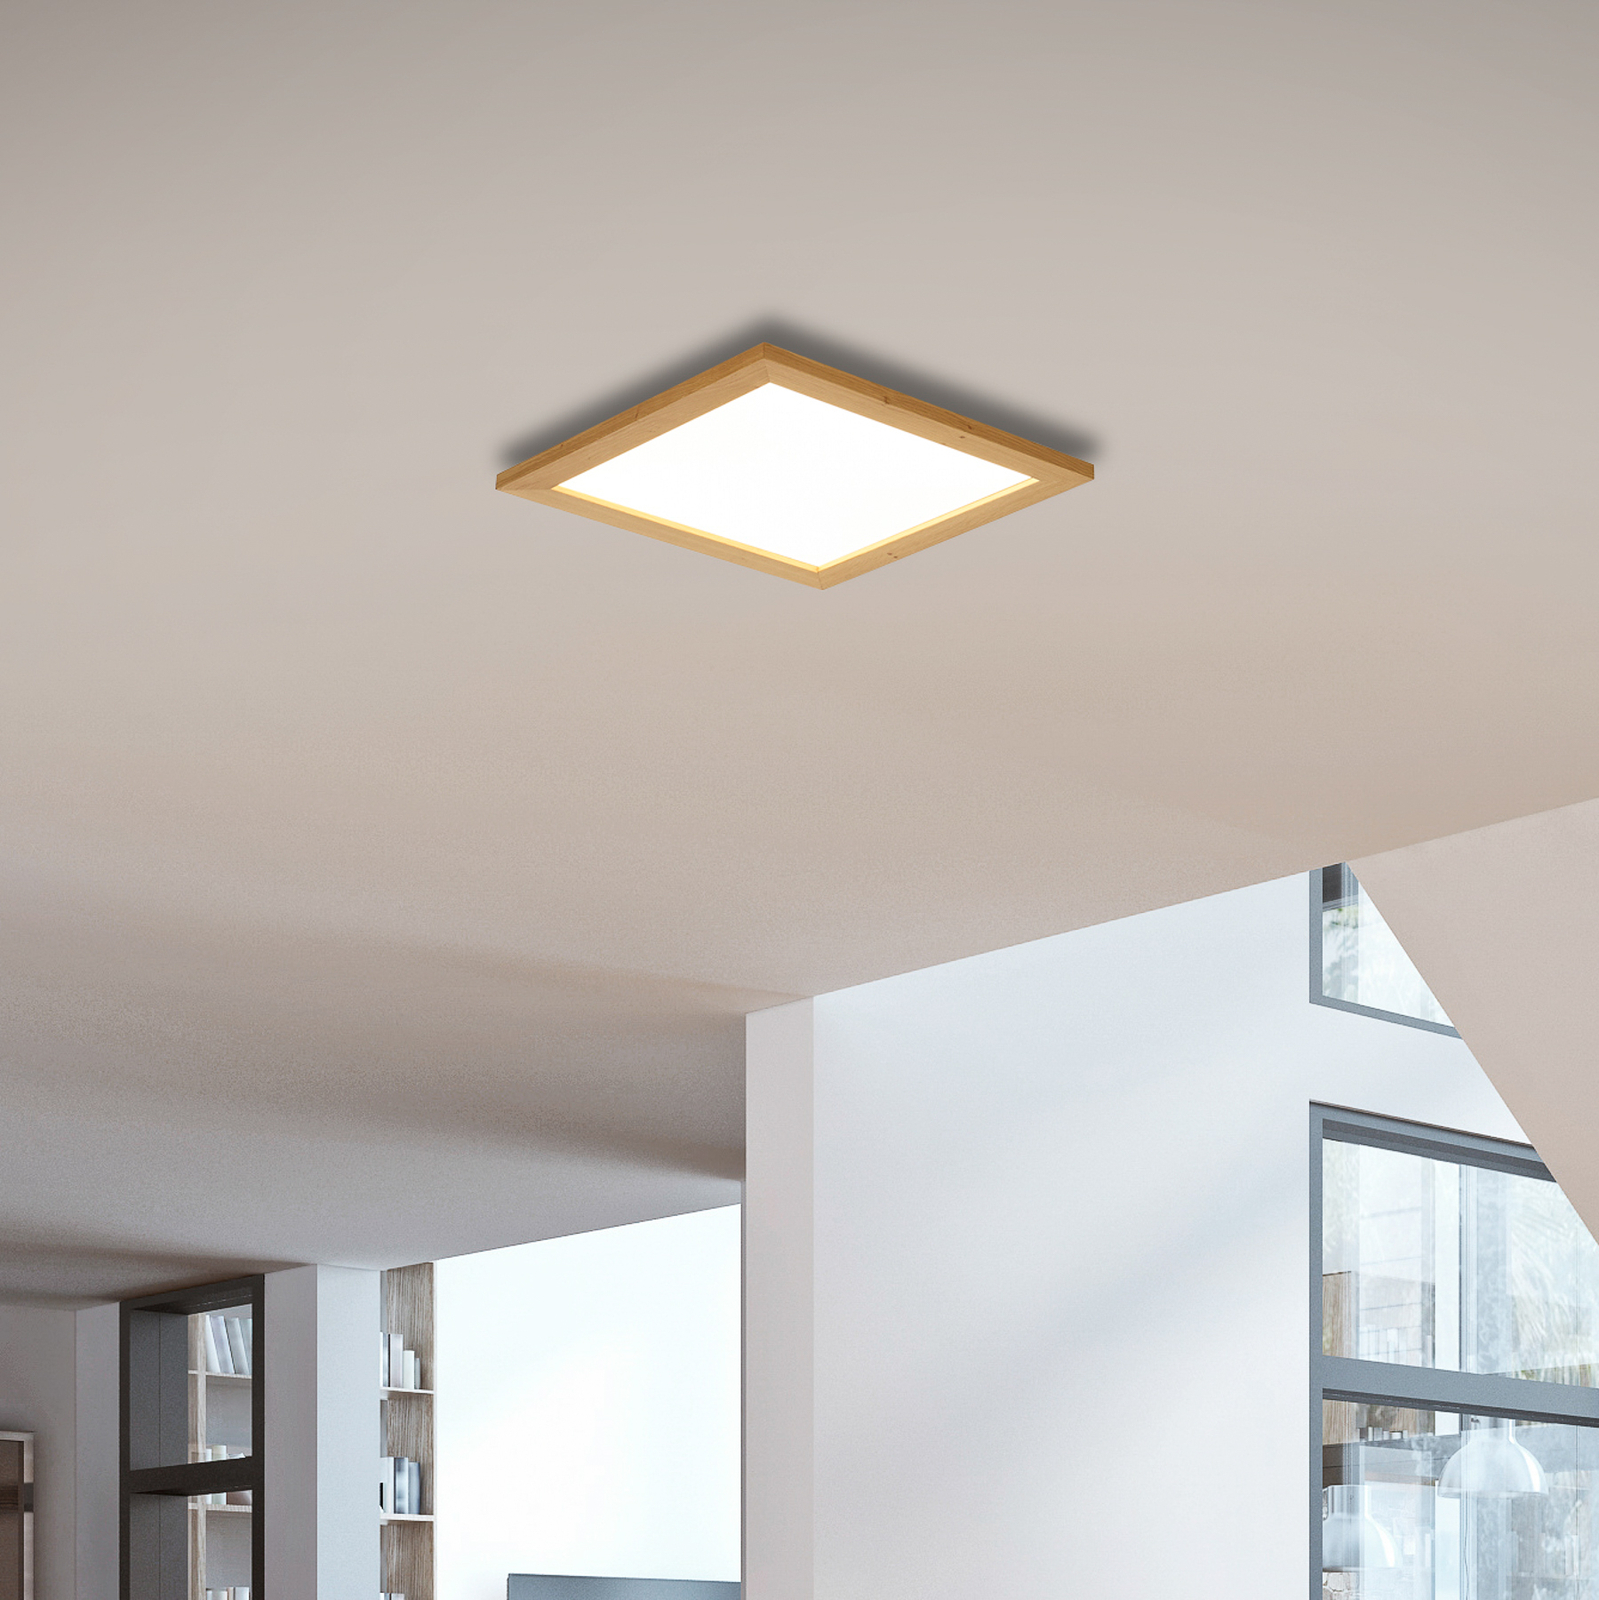 Quitani Aurinor LED paneel, eiken naturel, 45 cm